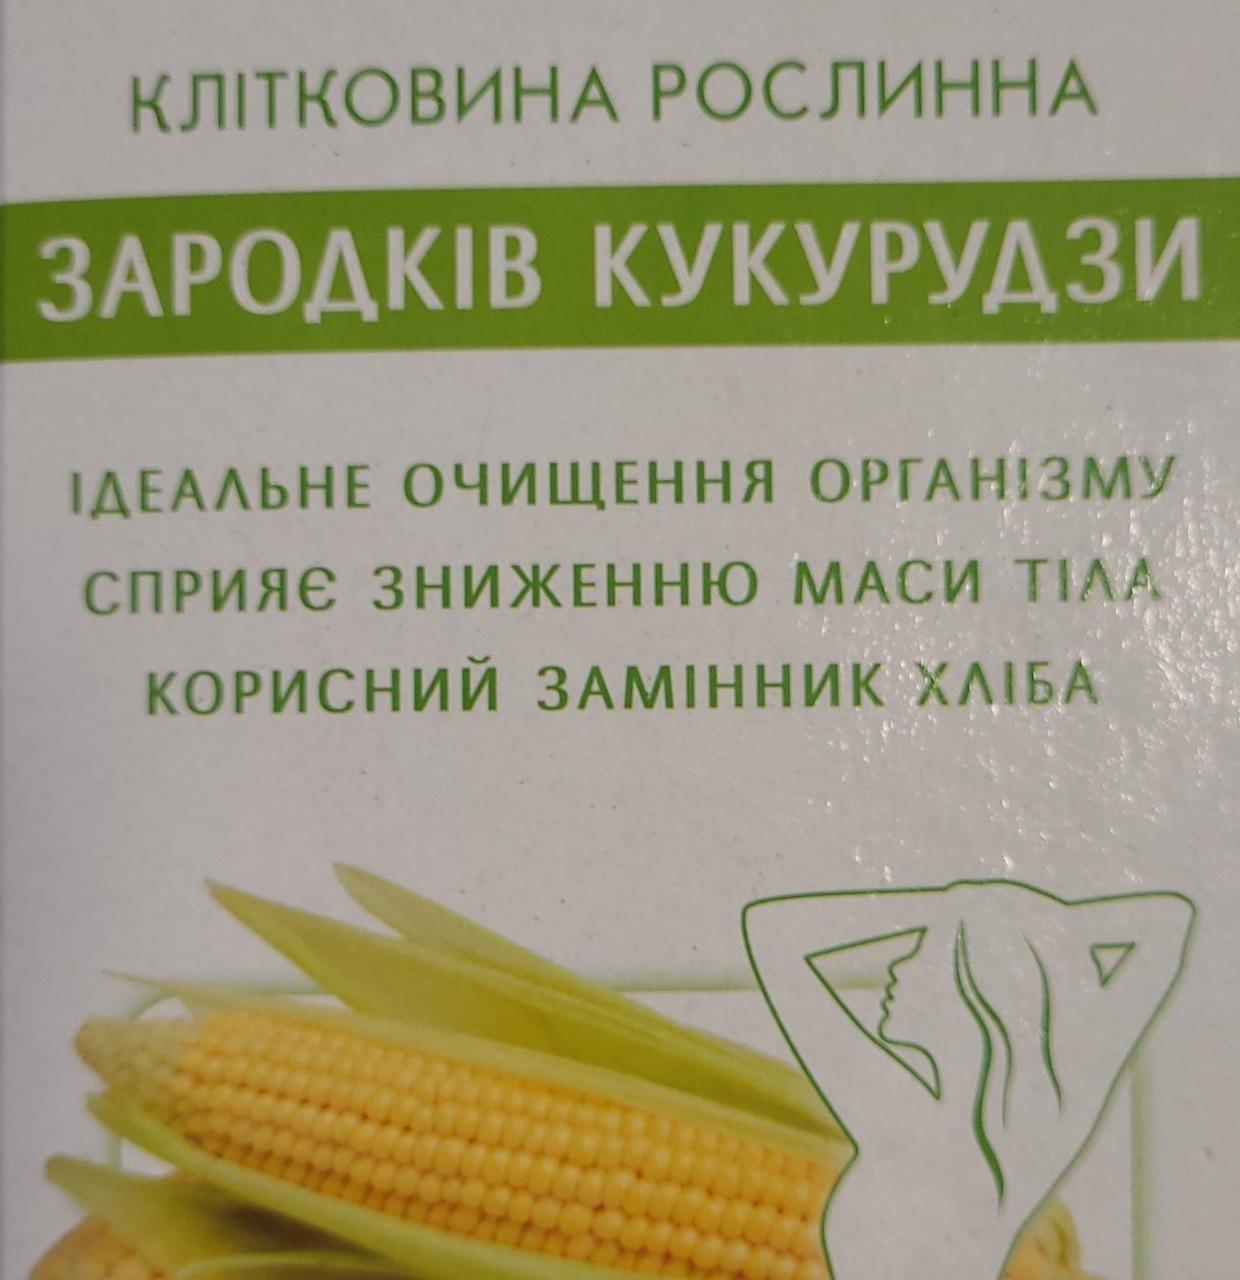 Фото - Добавка дієтична Жмих харчовий із зародків кукурудзи Клітковина рослинна Golden Kings of Ukraine